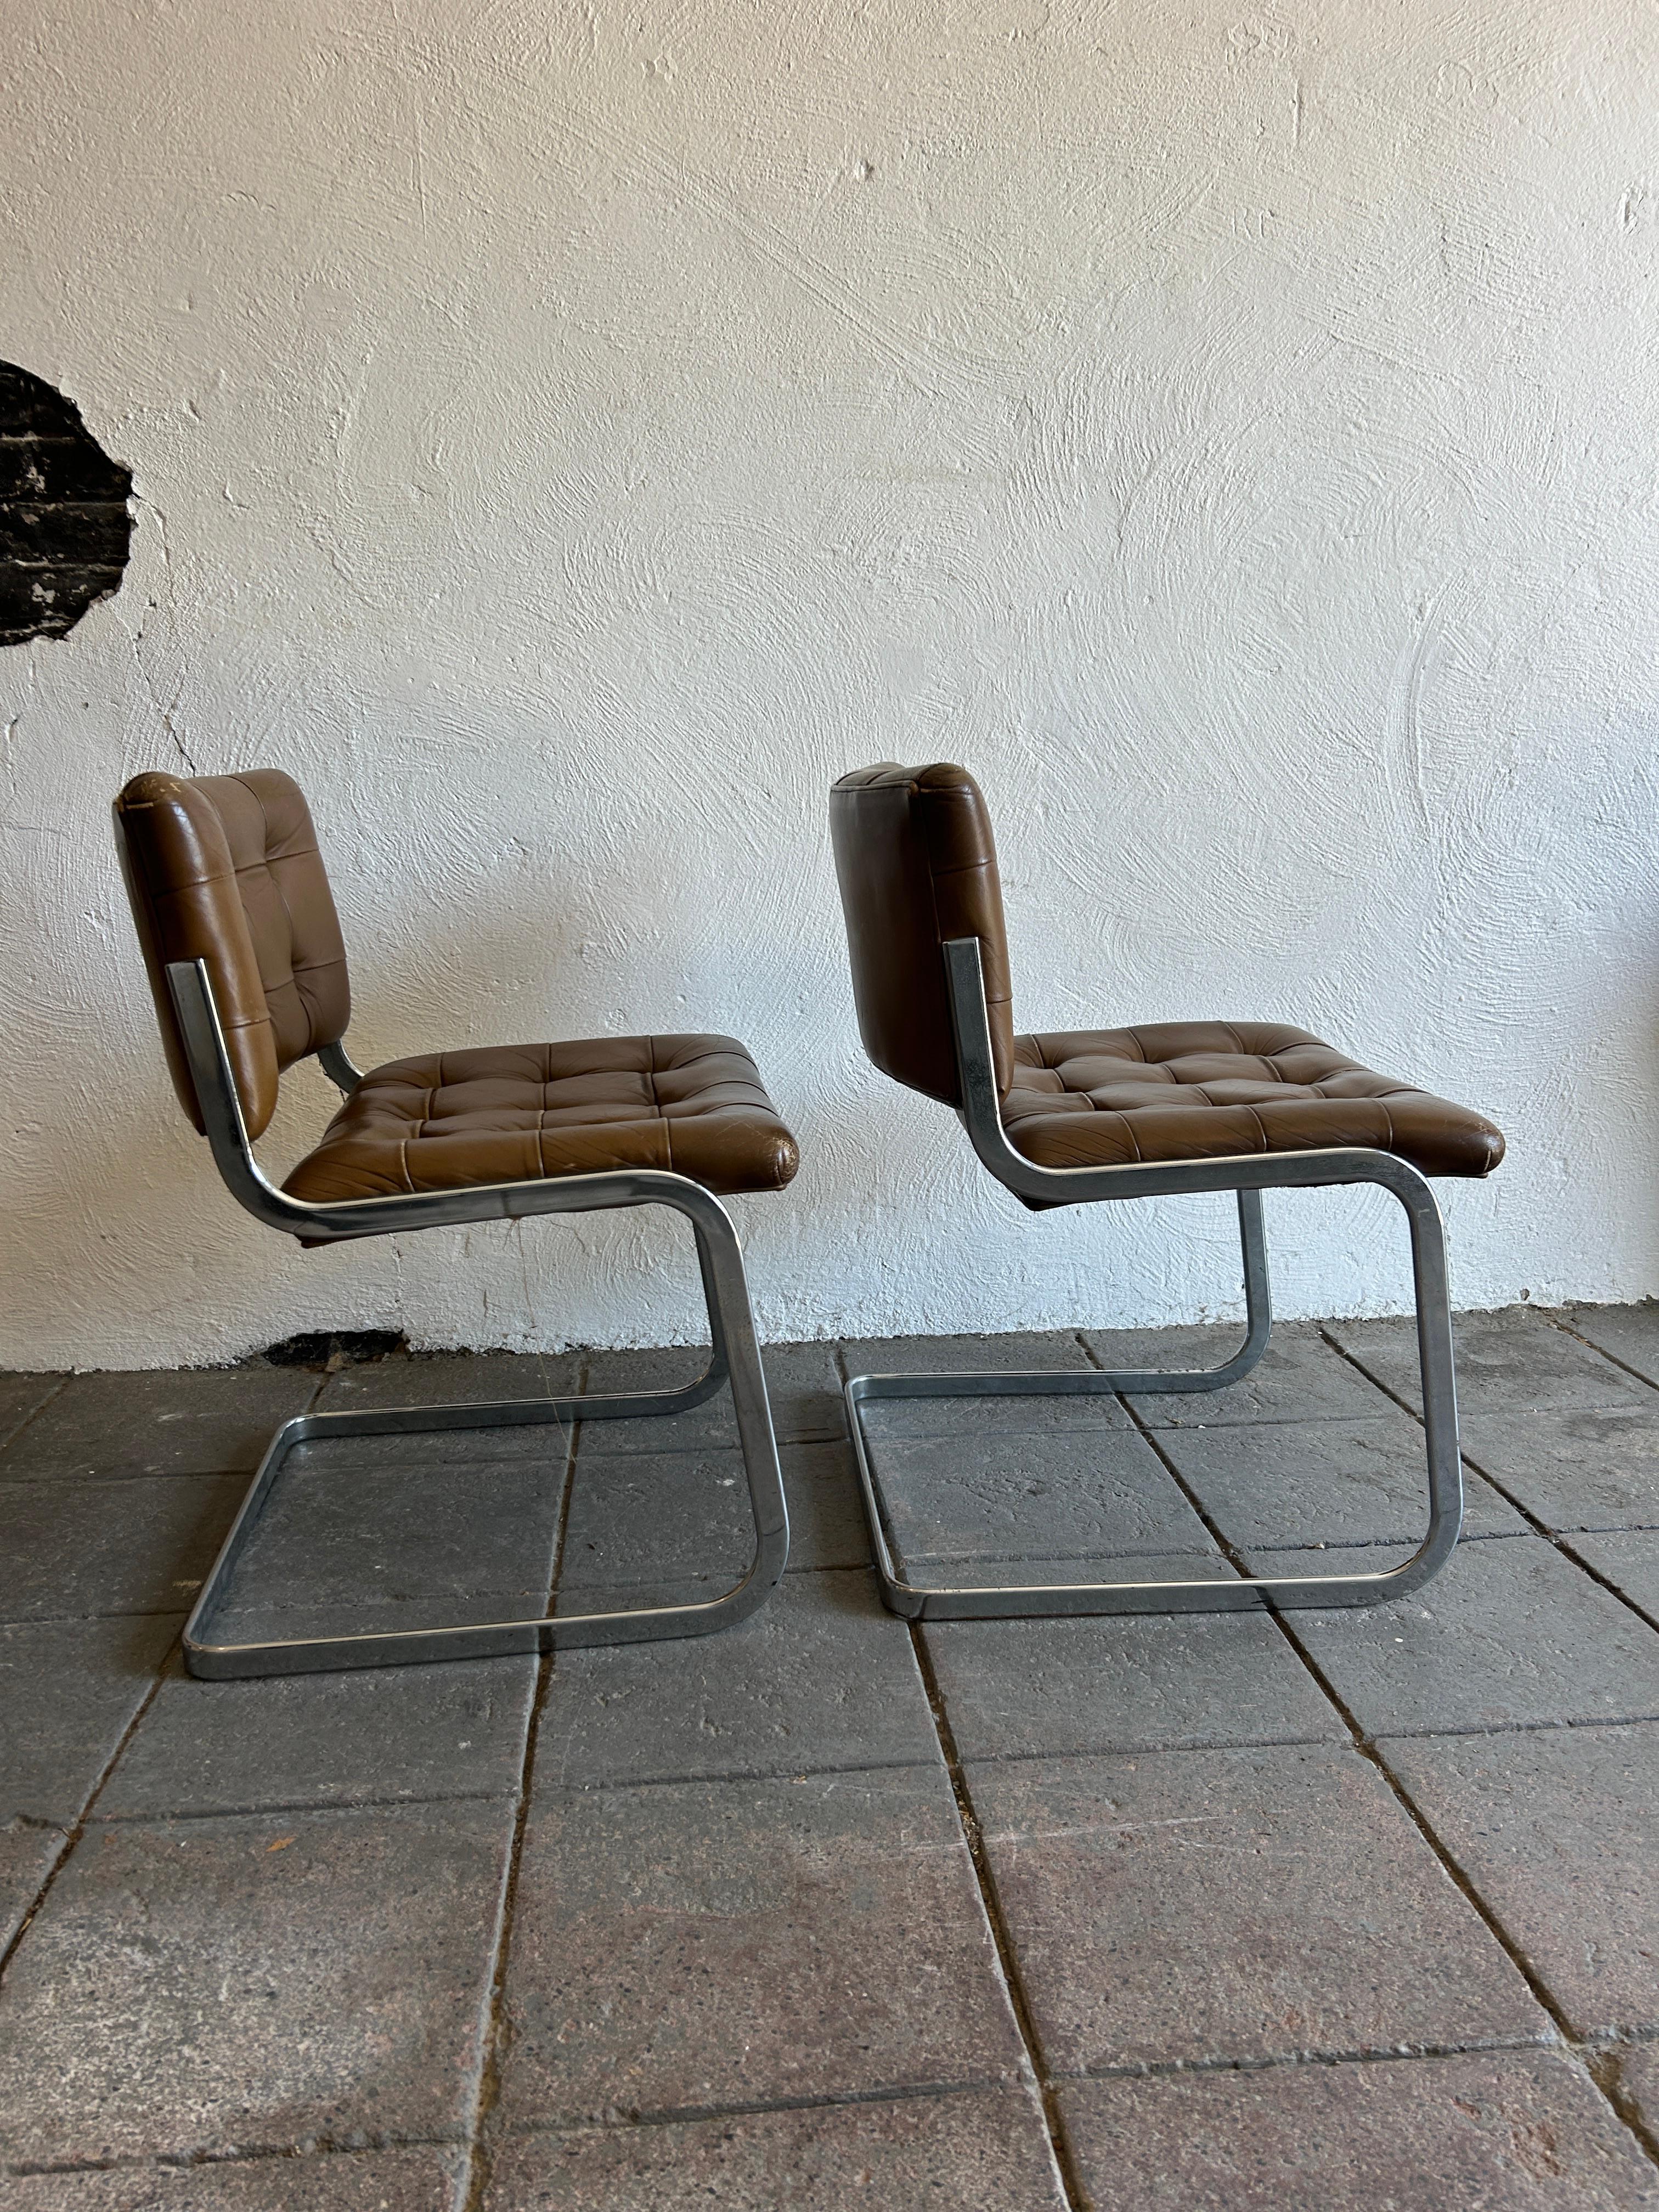 Une paire unique de chaises en cuir RH-304, conçues par Robert Haussmann et fabriquées par Stendig De Sede. Cette paire a été fabriquée vers 1960. Ces chaises sont recouvertes de cuir marron. Les cadres en tube plat arrondi sont en acier chromé. Les